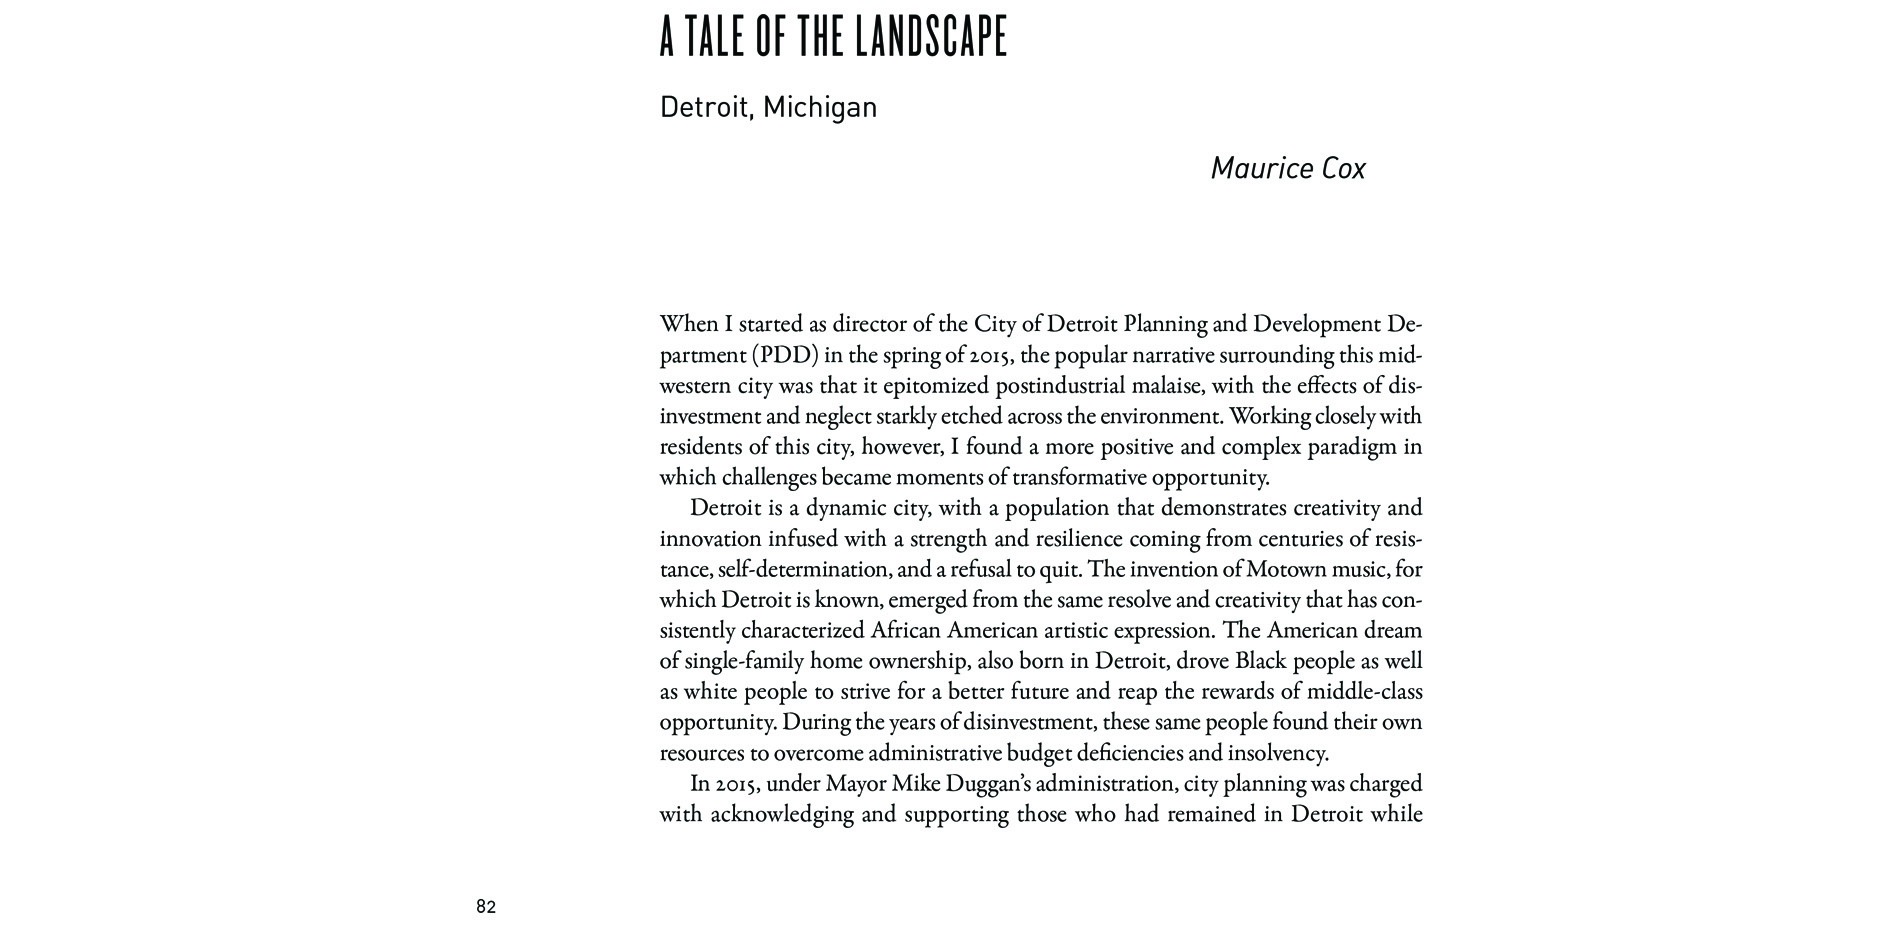 . Black Landscapes Matter, A Tale of the Landscape: Detroit, Michigan (pg. 83)